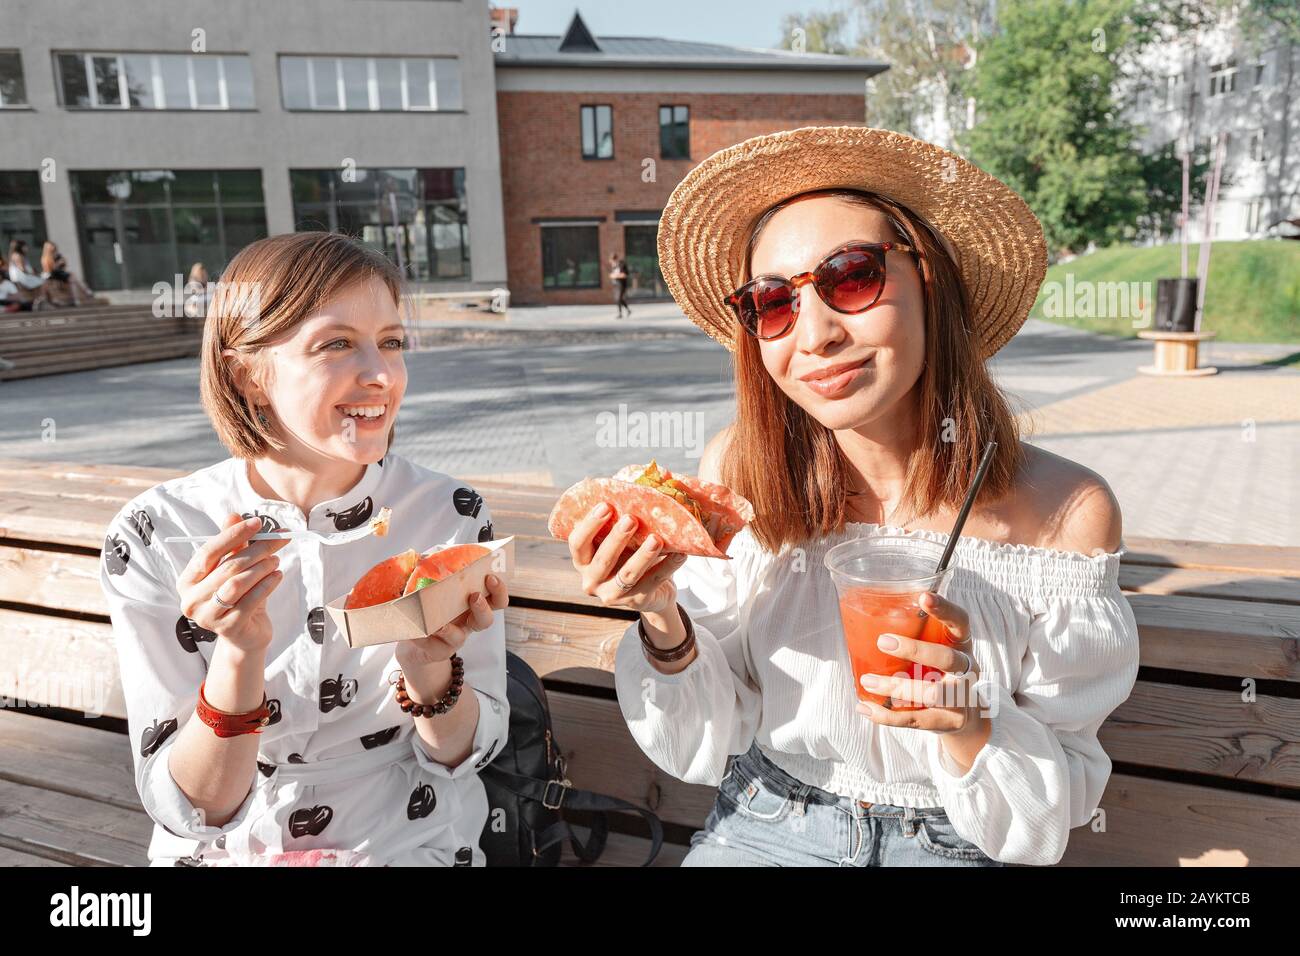 Deux filles mangent des tacos traditionnels mexicains de la restauration rapide et boivent michelada dans la rue. Concept de communication et de plats à emporter Banque D'Images